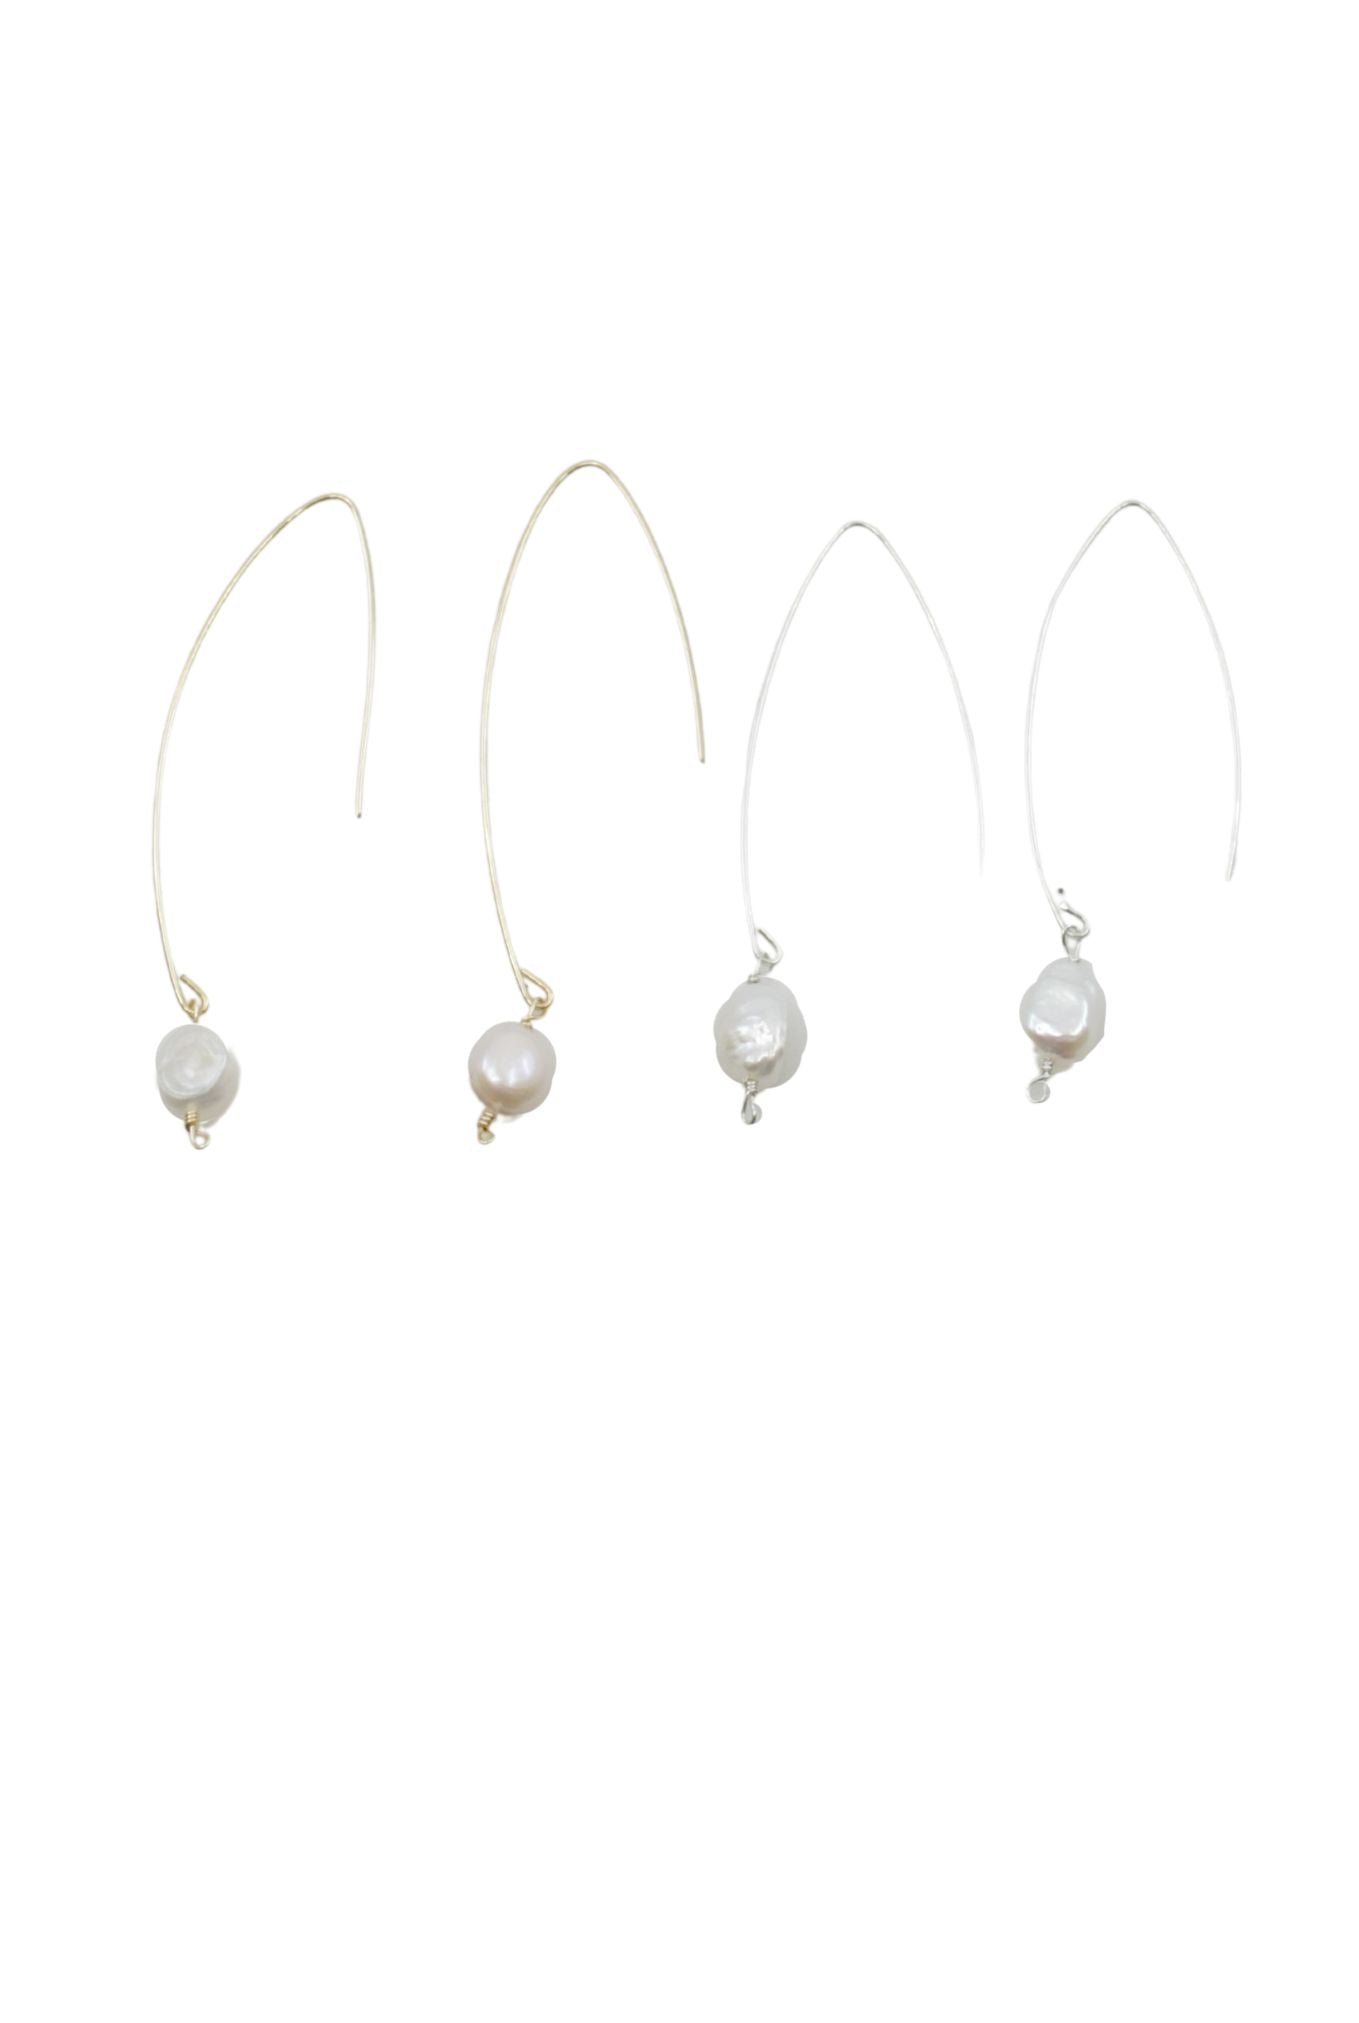 Jill Long Wire Drop Pearl Earrings